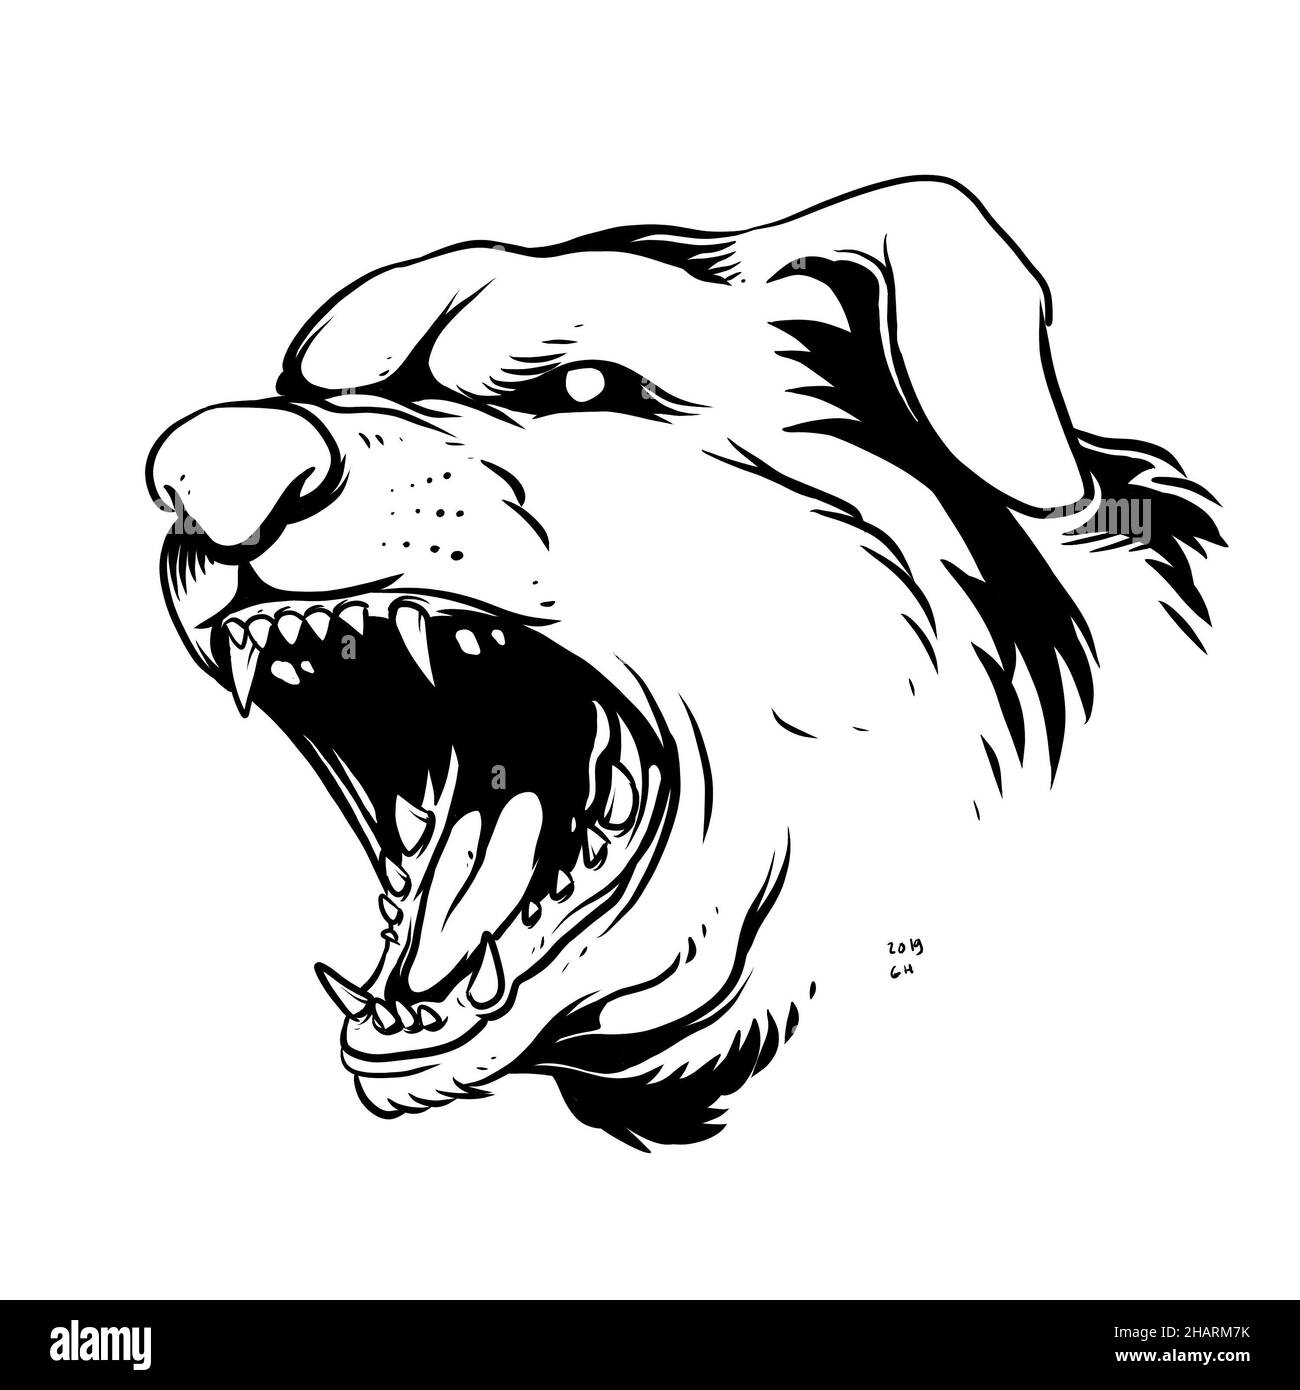 un visage furieux de chien aboyant. une illustration dessinée à la main d'une tête d'animal sauvage. dessin d'art de ligne pour emblème, affiche, autocollant, tatouage, etc Banque D'Images